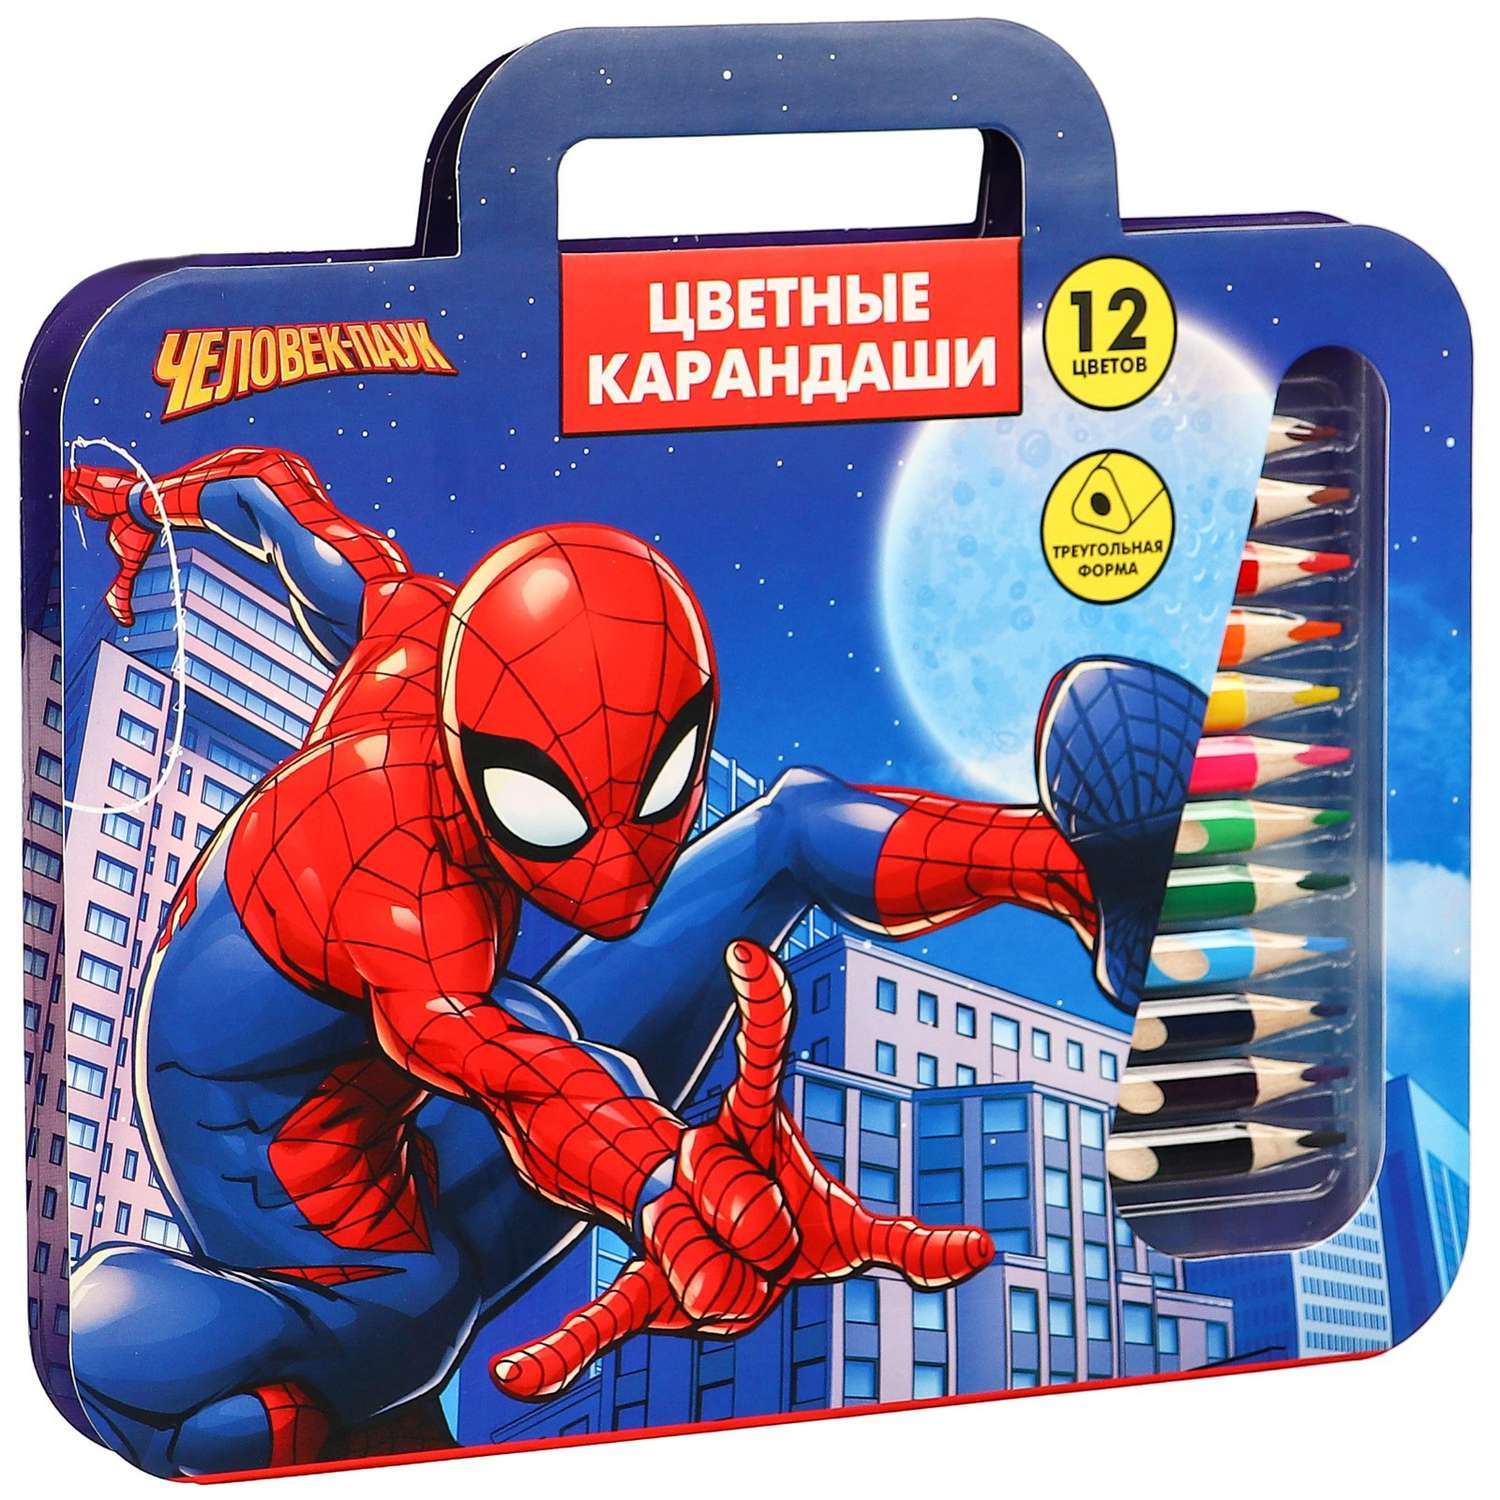 Карандаши Marvel цветные 12 цветов в пенале «Супер-мен» Человек-паук - фото 1